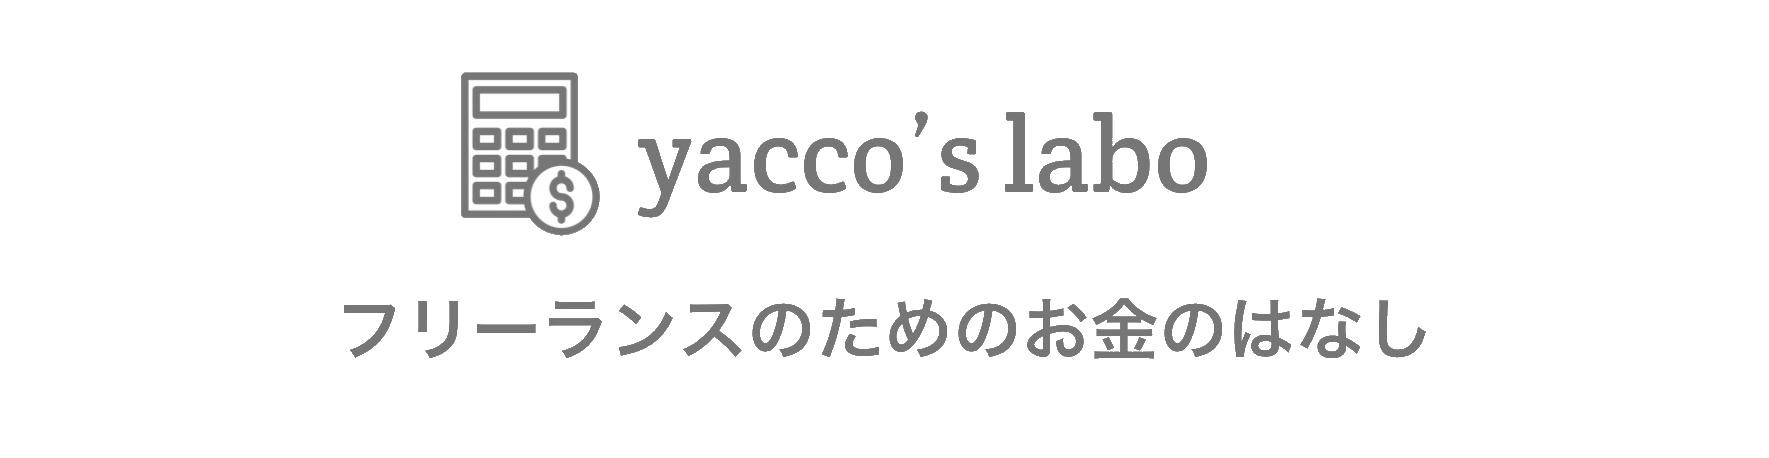 yacco's labo